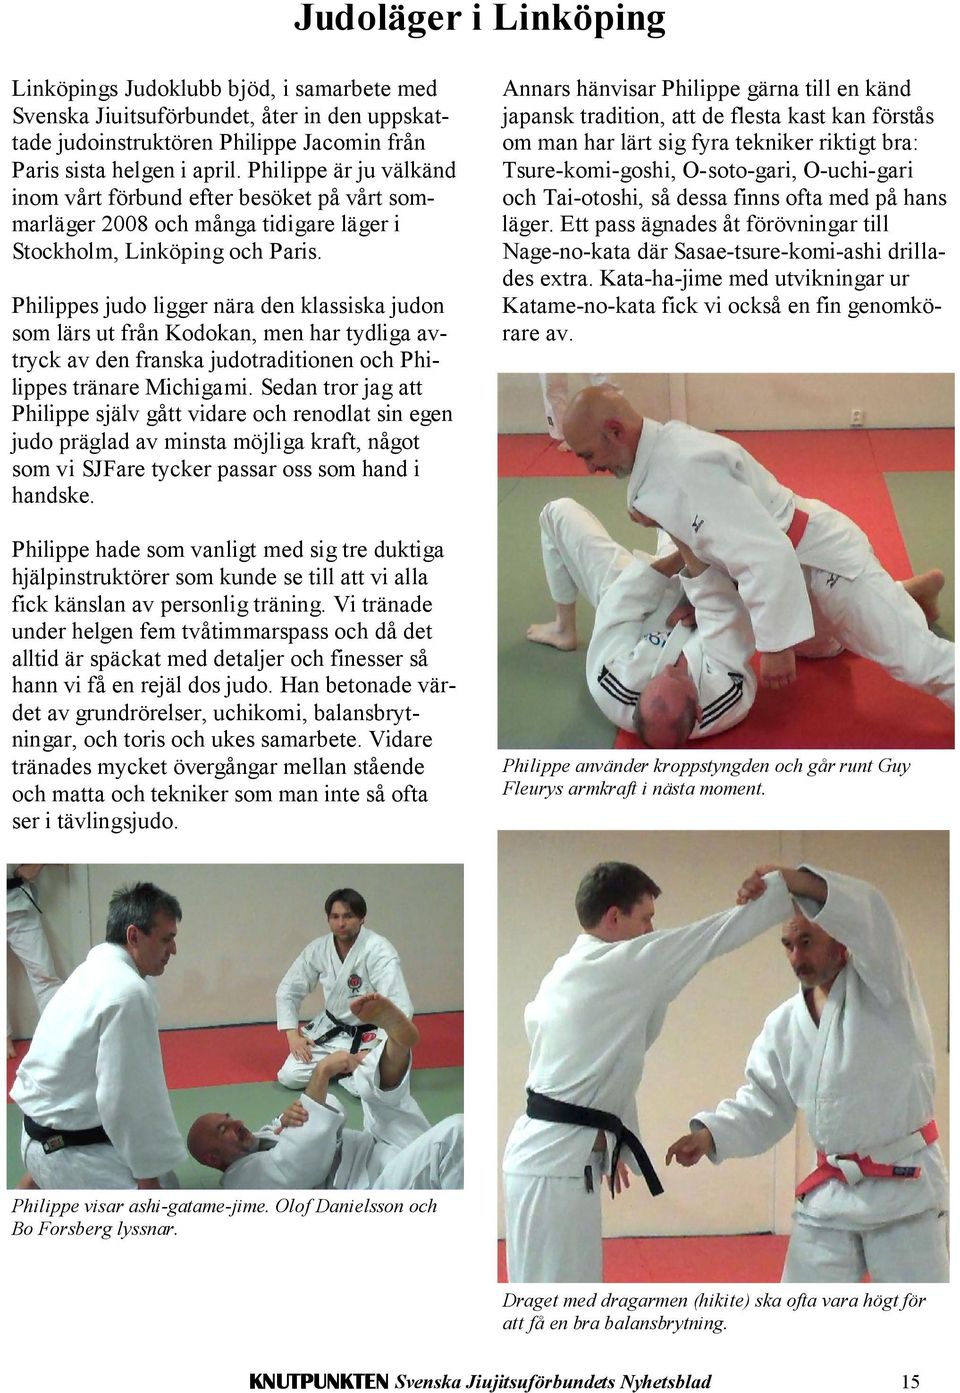 Philippes judo ligger nära den klassiska judon som lärs ut från Kodokan, men har tydliga avtryck av den franska judotraditionen och Philippes tränare Michigami.